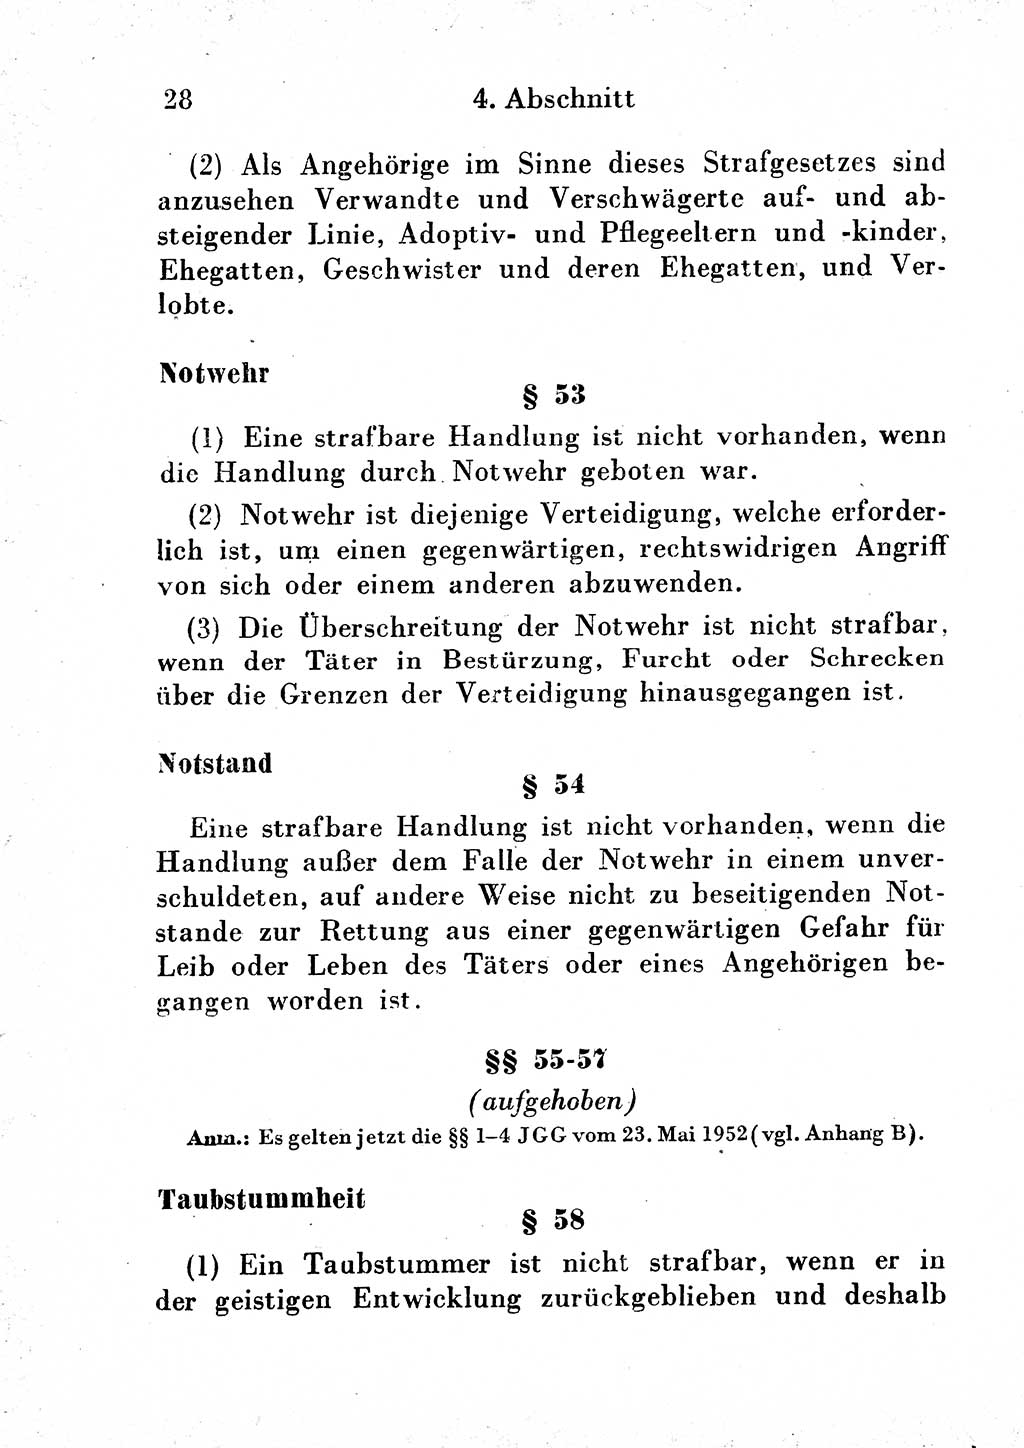 Strafgesetzbuch (StGB) und andere Strafgesetze [Deutsche Demokratische Republik (DDR)] 1954, Seite 28 (StGB Strafges. DDR 1954, S. 28)